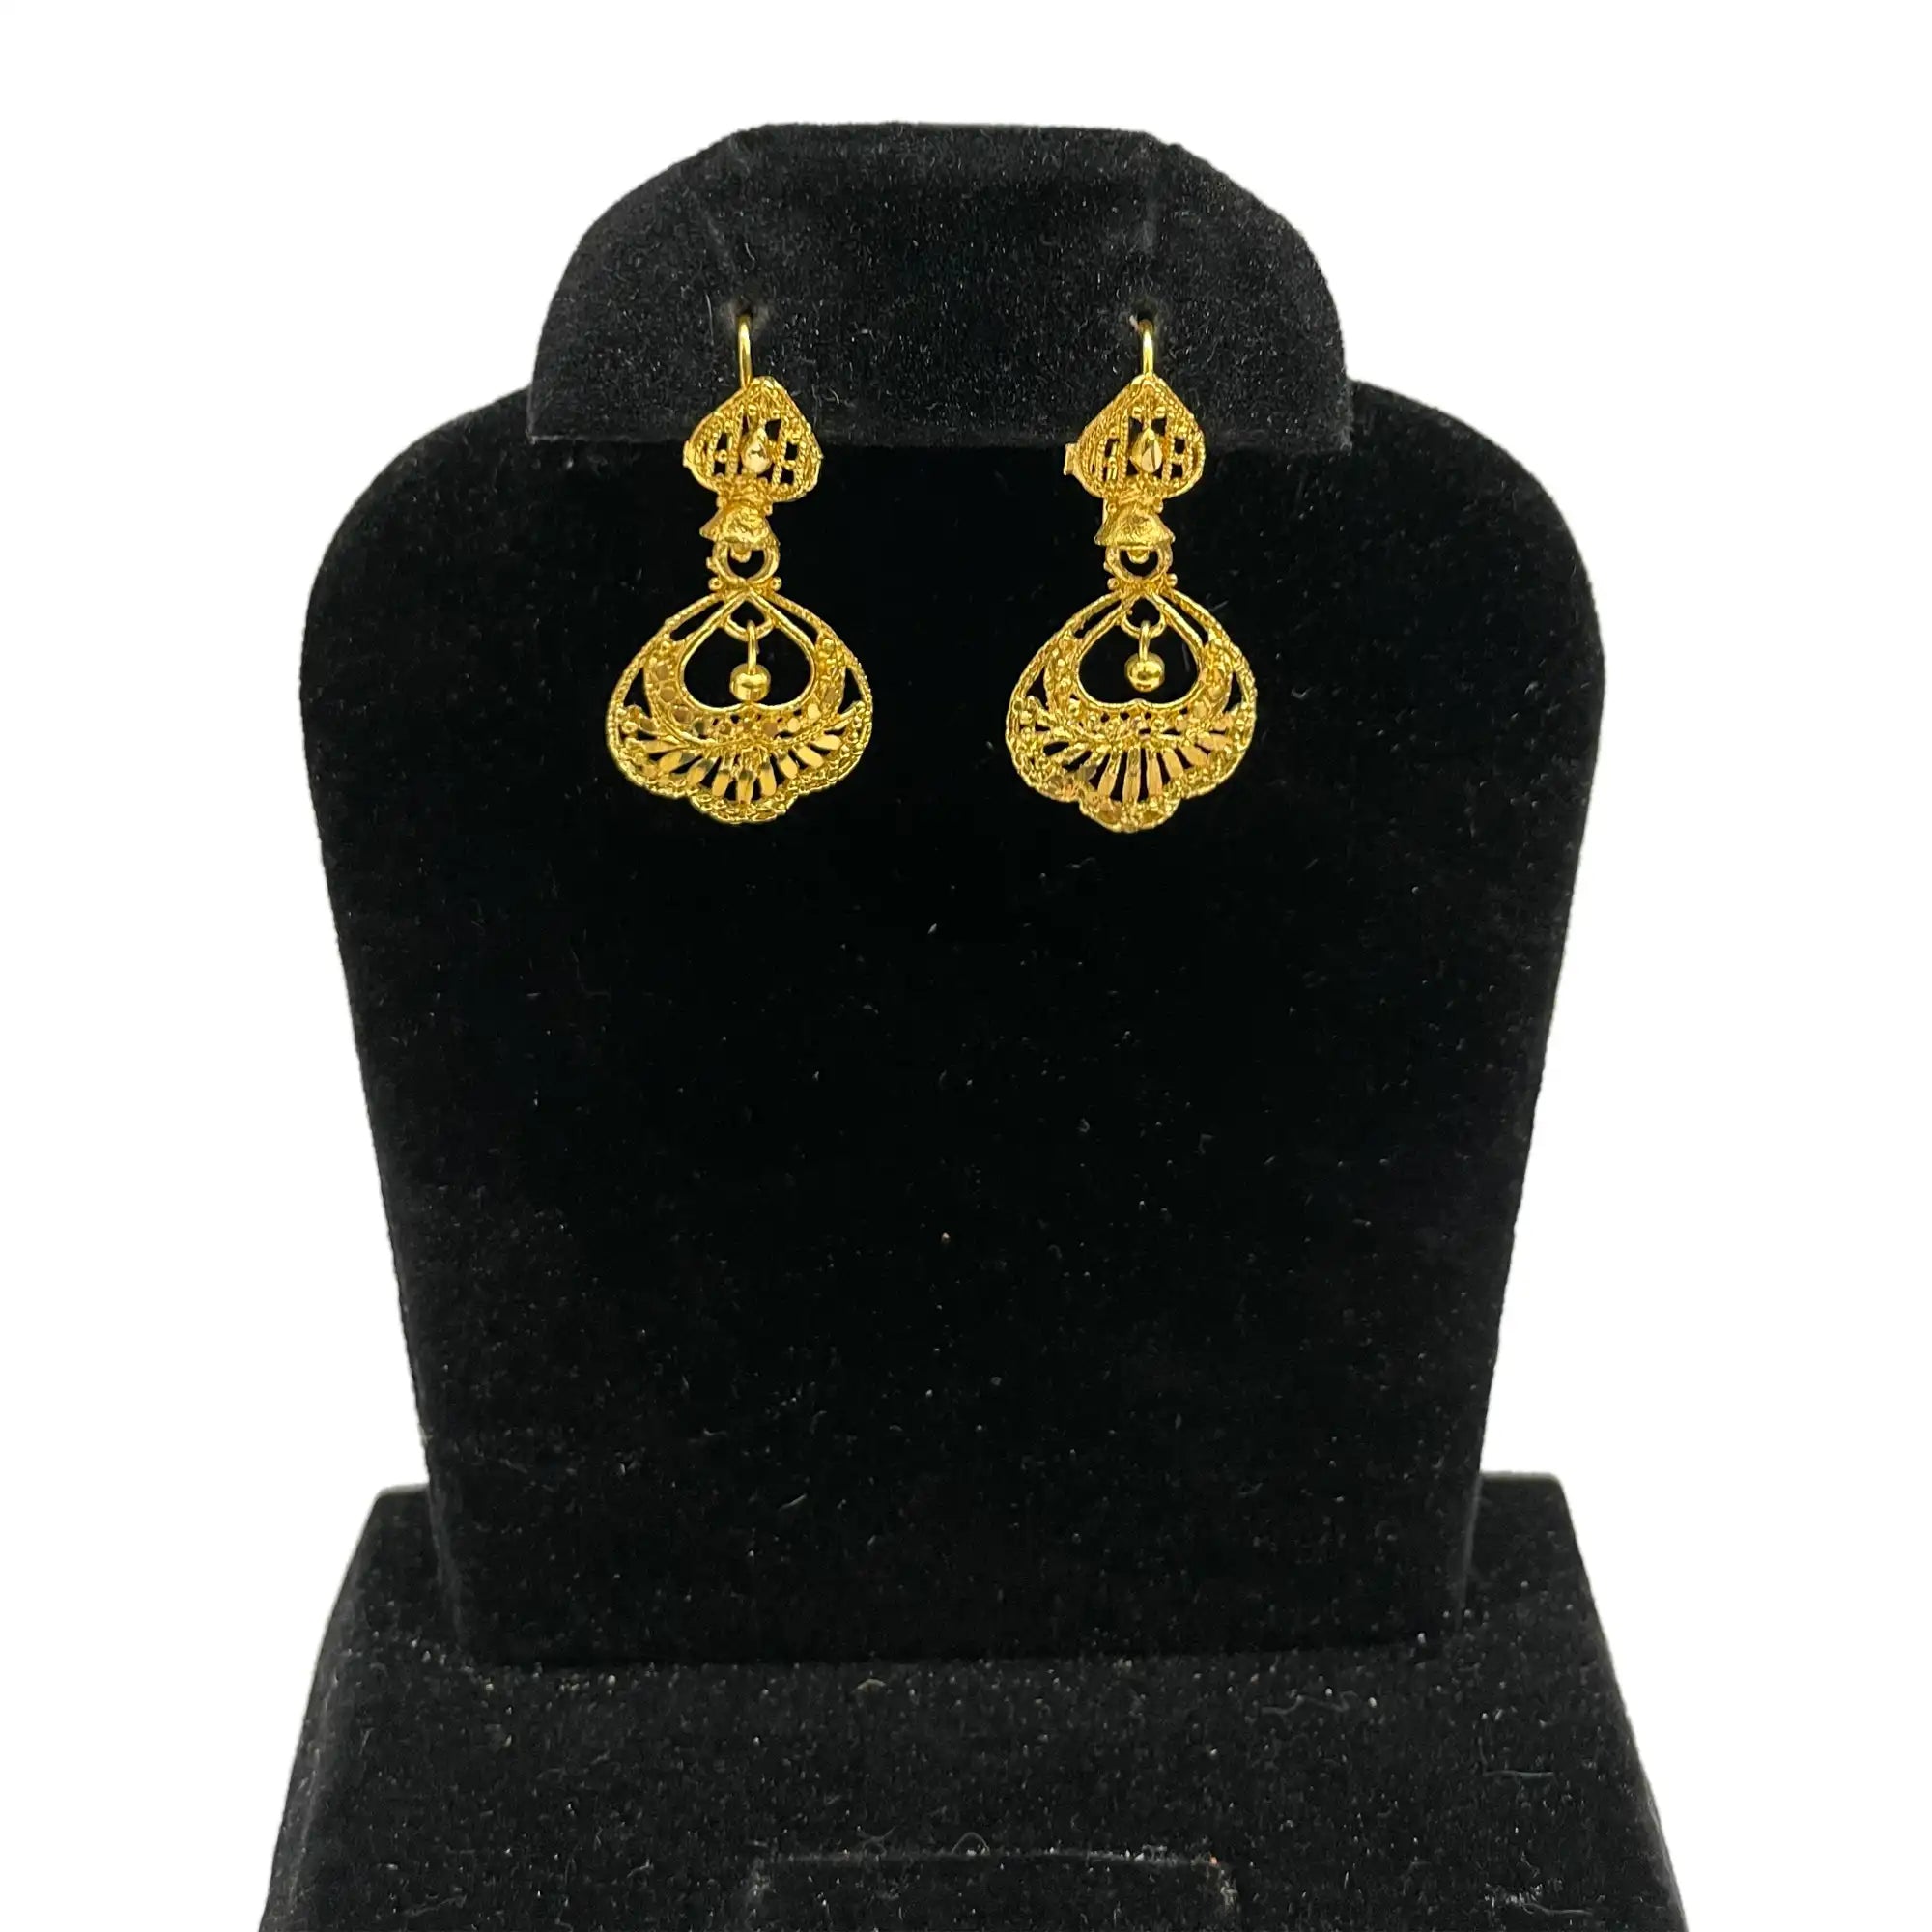 jhumka earrings, statement earrings, bridesmaid earrings, 22k gold plated earrings